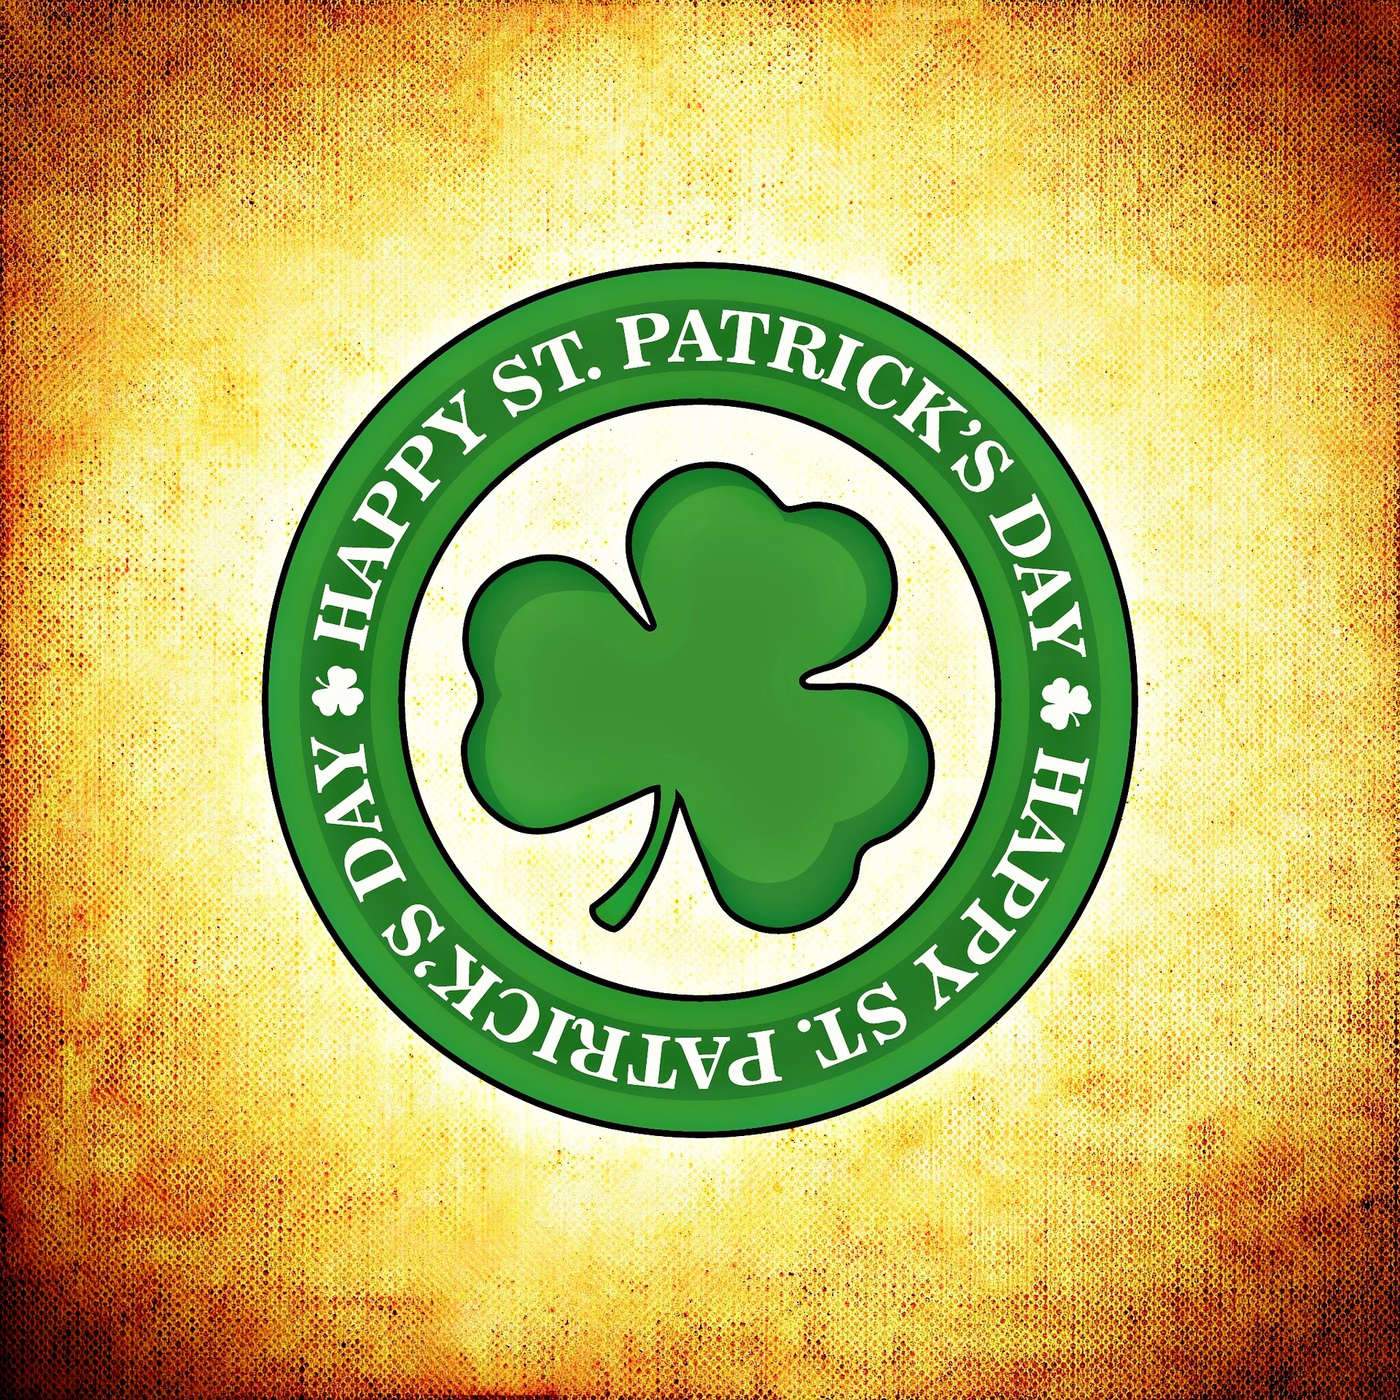 Que hacer el dia de St. Patrick’s